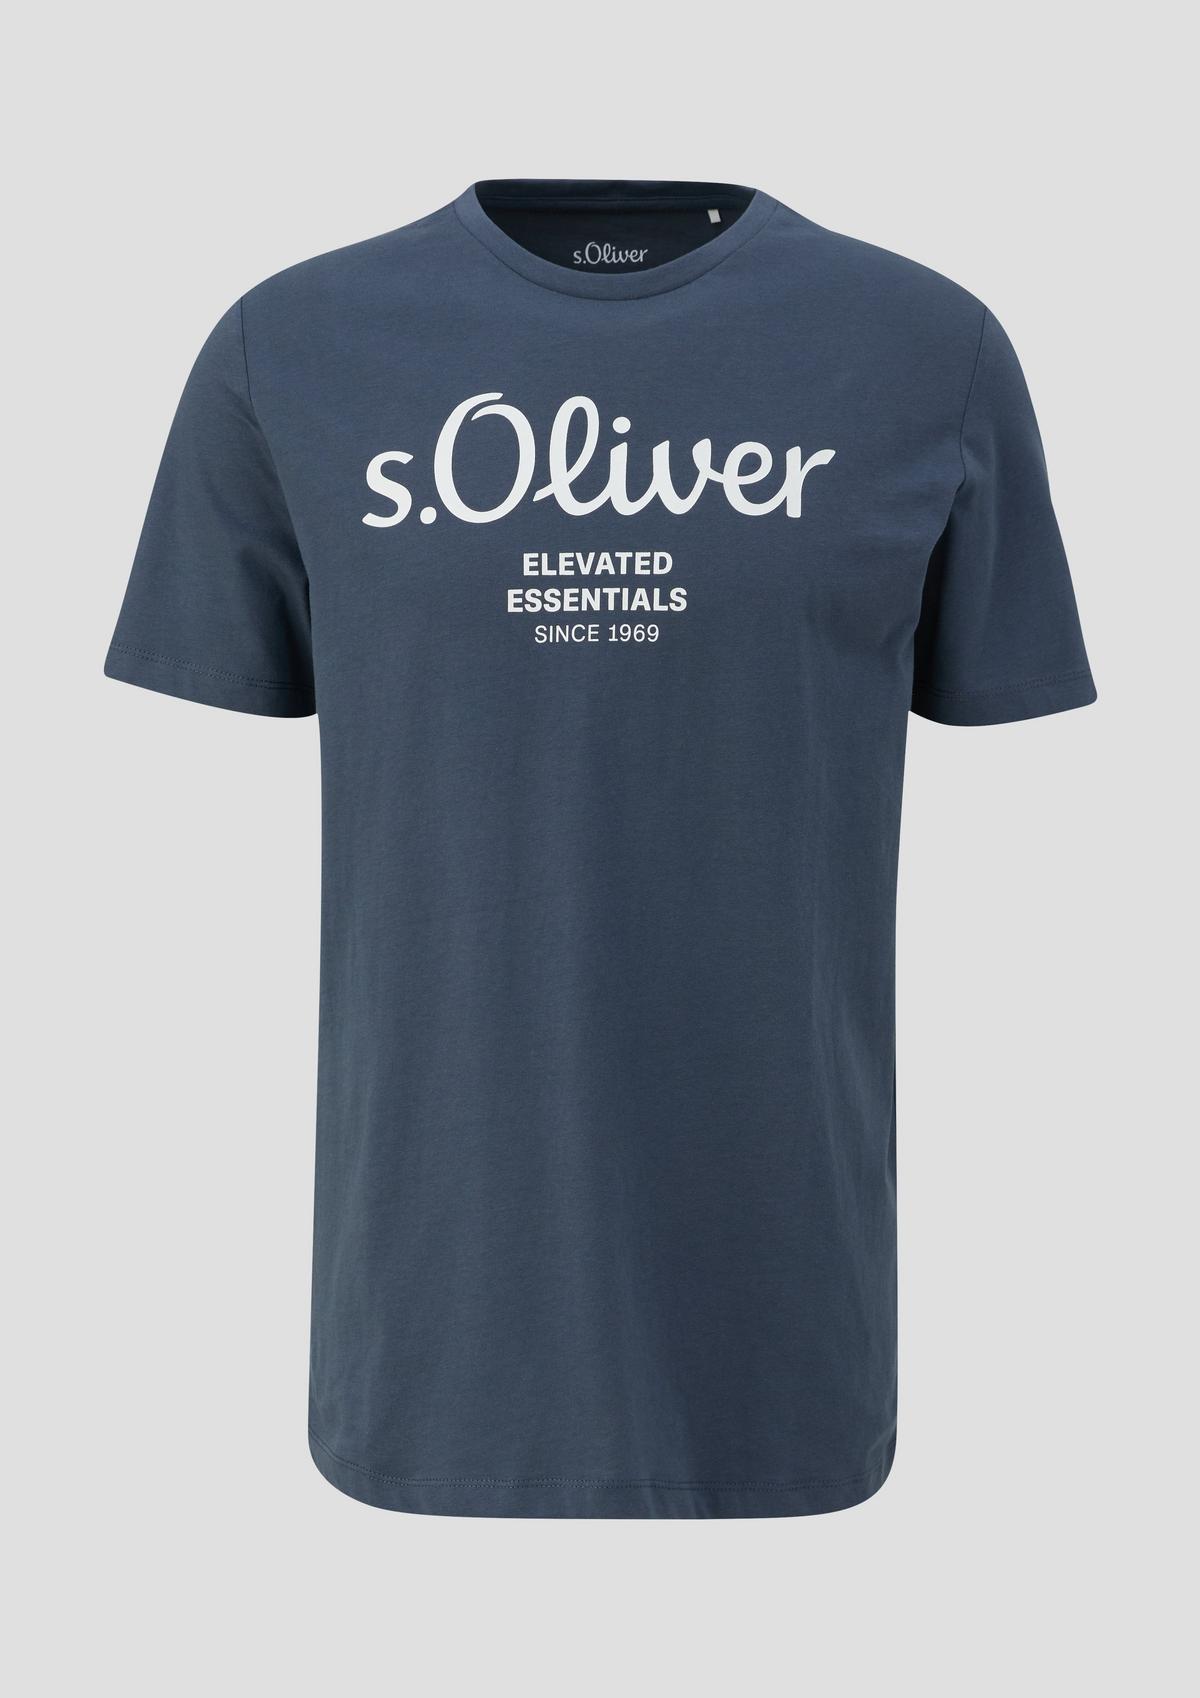 s.Oliver s.Oliver shirt met print